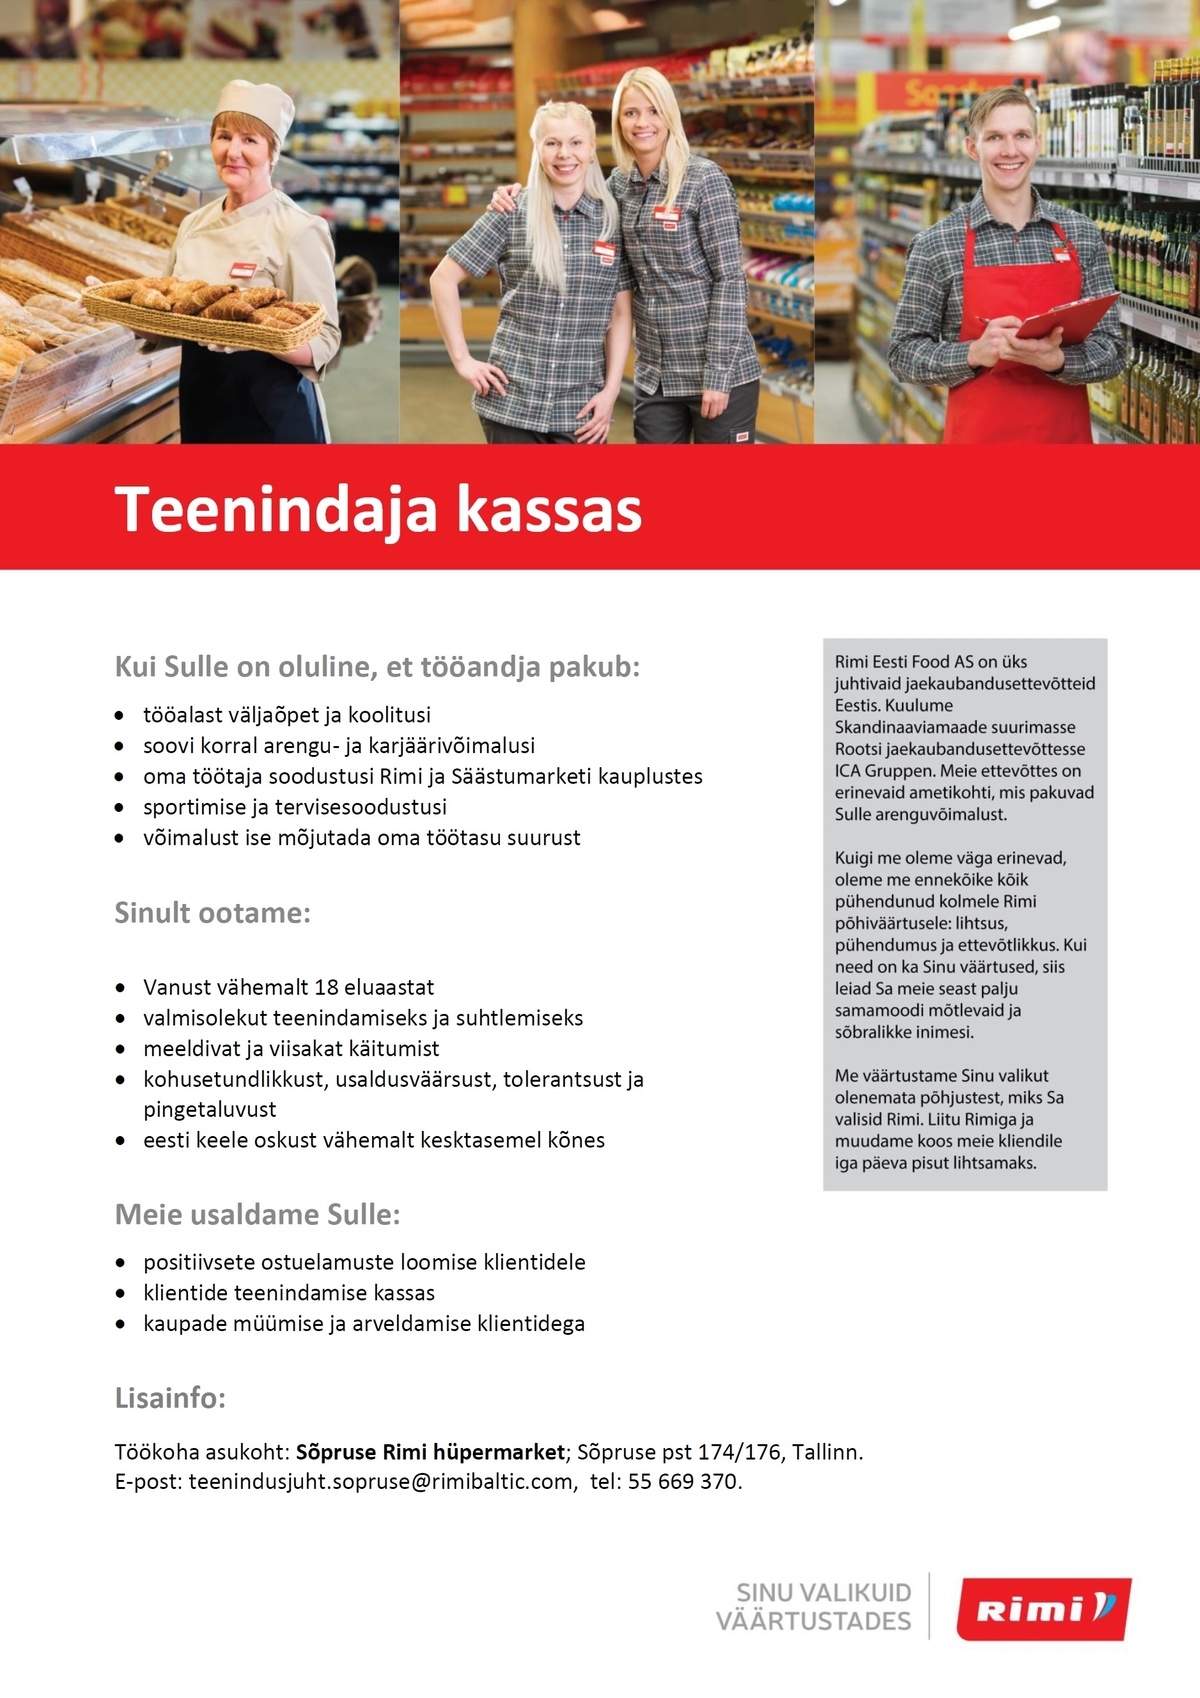 Rimi Eesti Food AS Teenindaja (kassas)  - Sõpruse Rimi hüpermarket